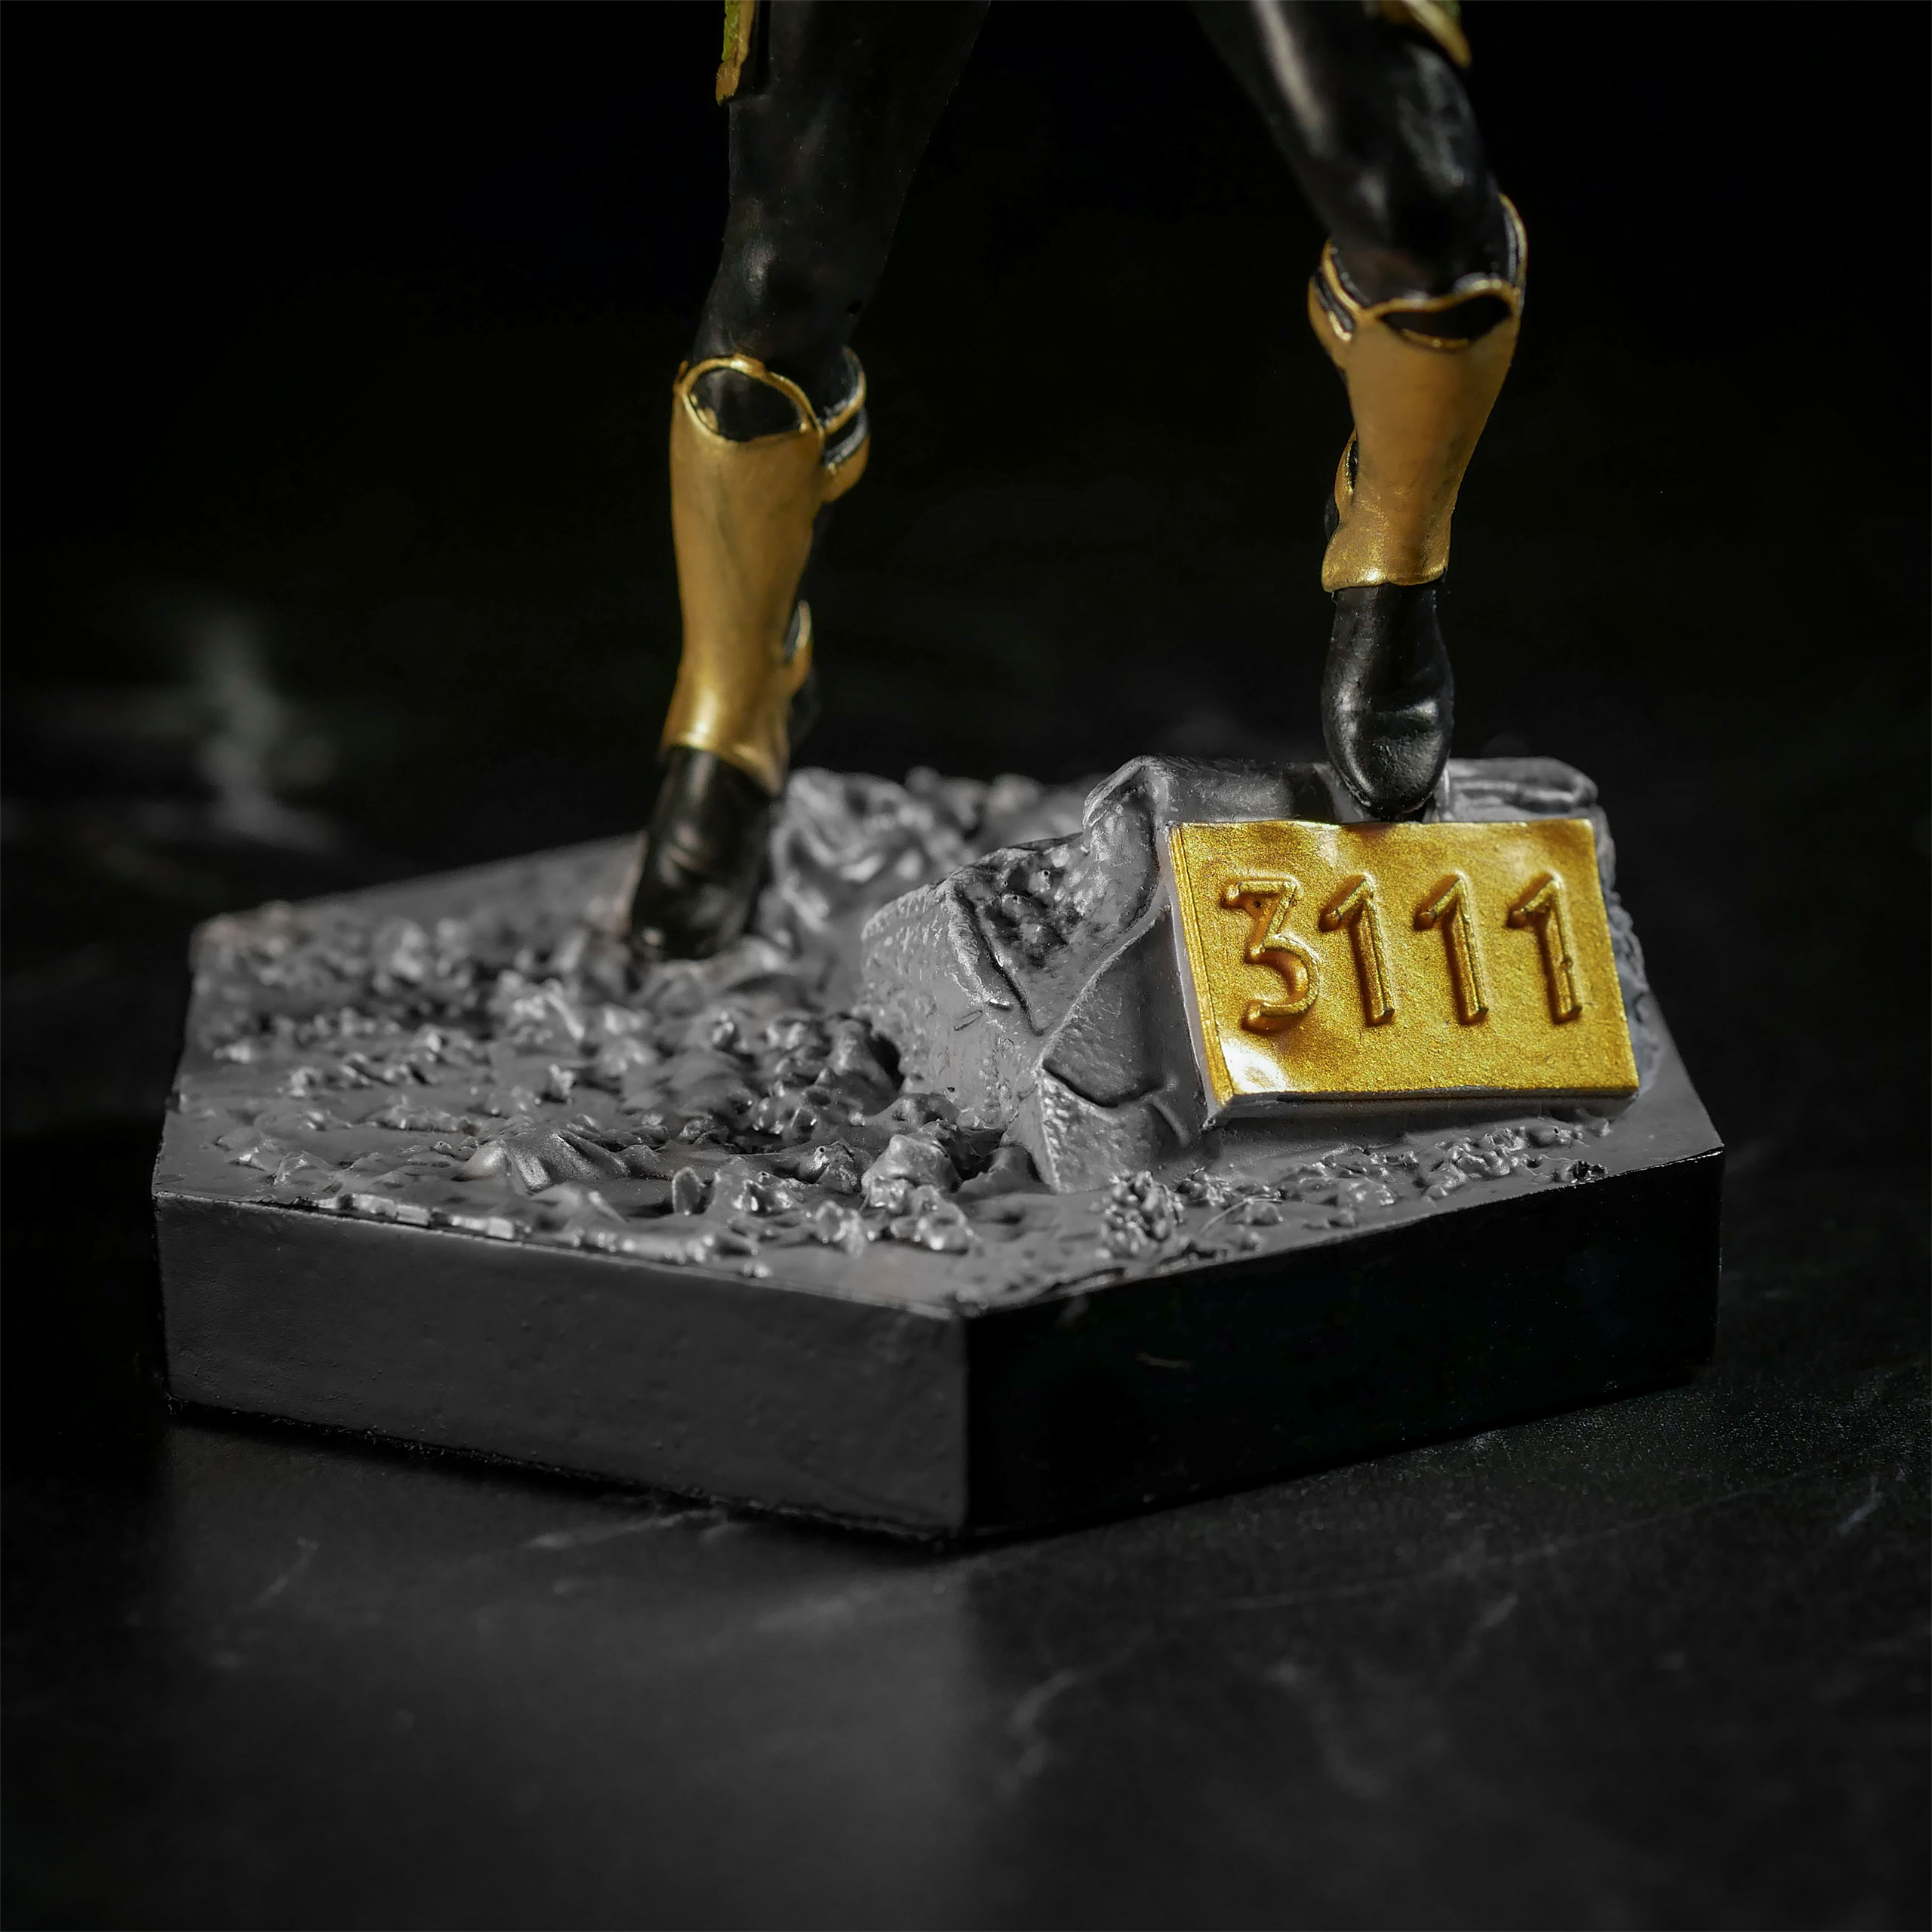 Marvel - Loki Figur Maßstab 1:16